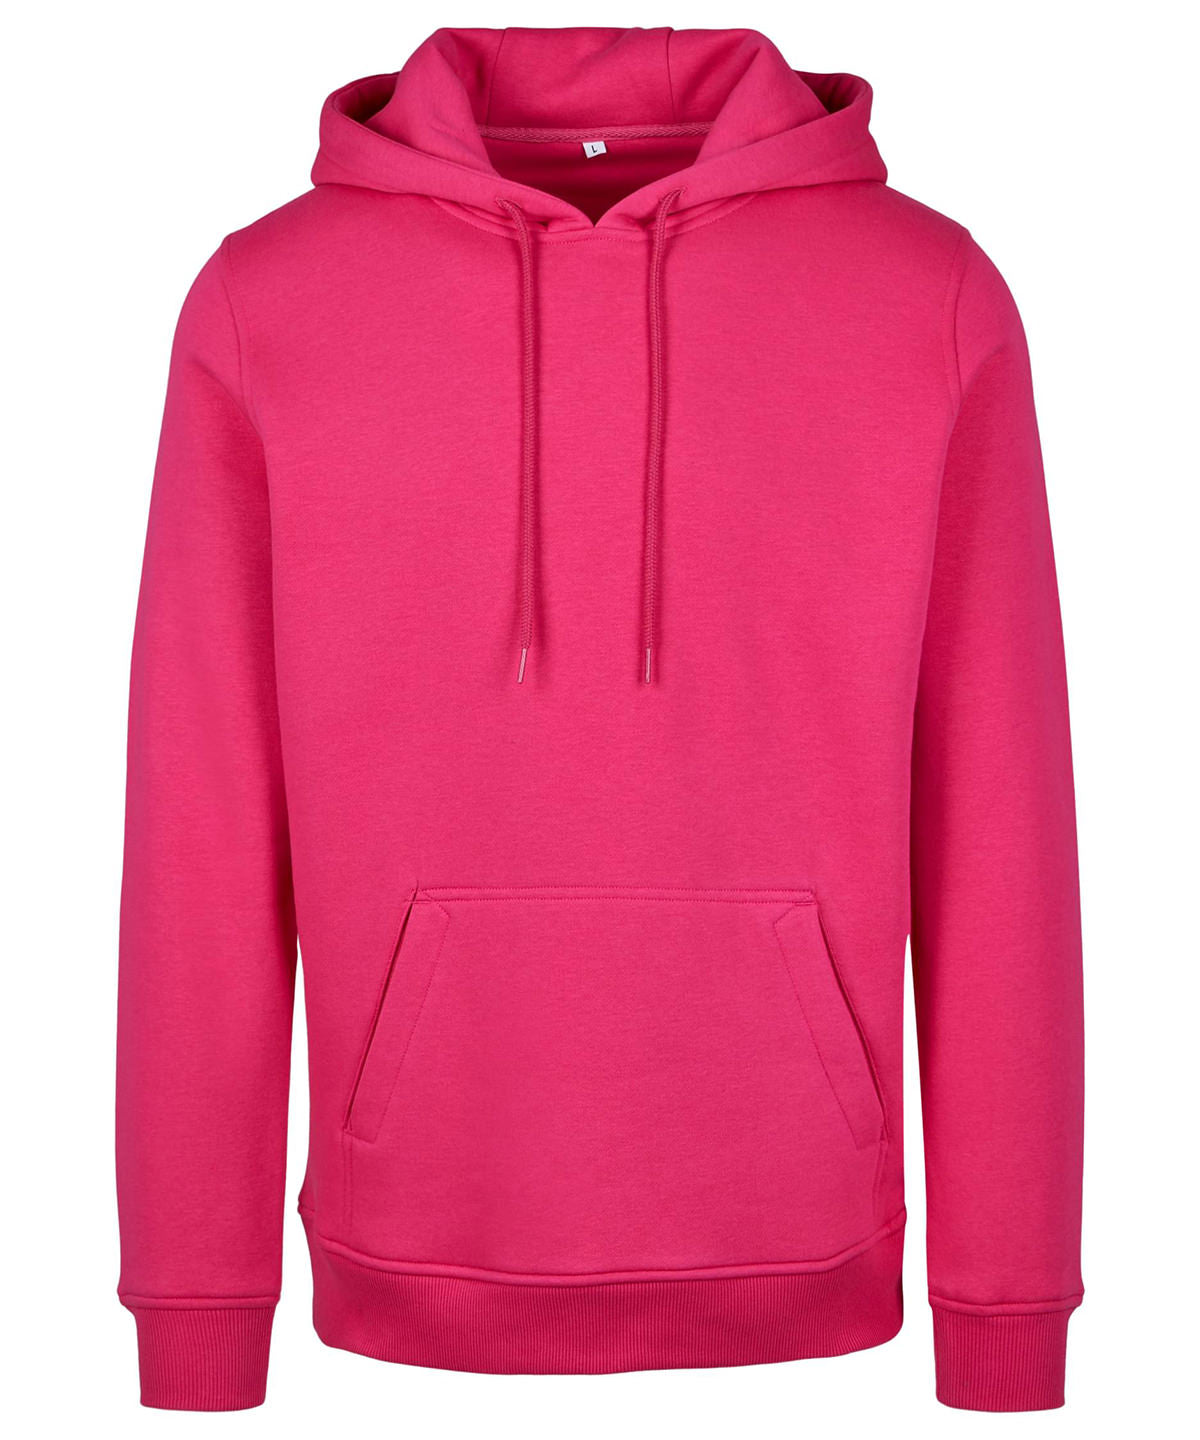 Personalised Hoodies - Light Purple Build Your Brand Heavy hoodie